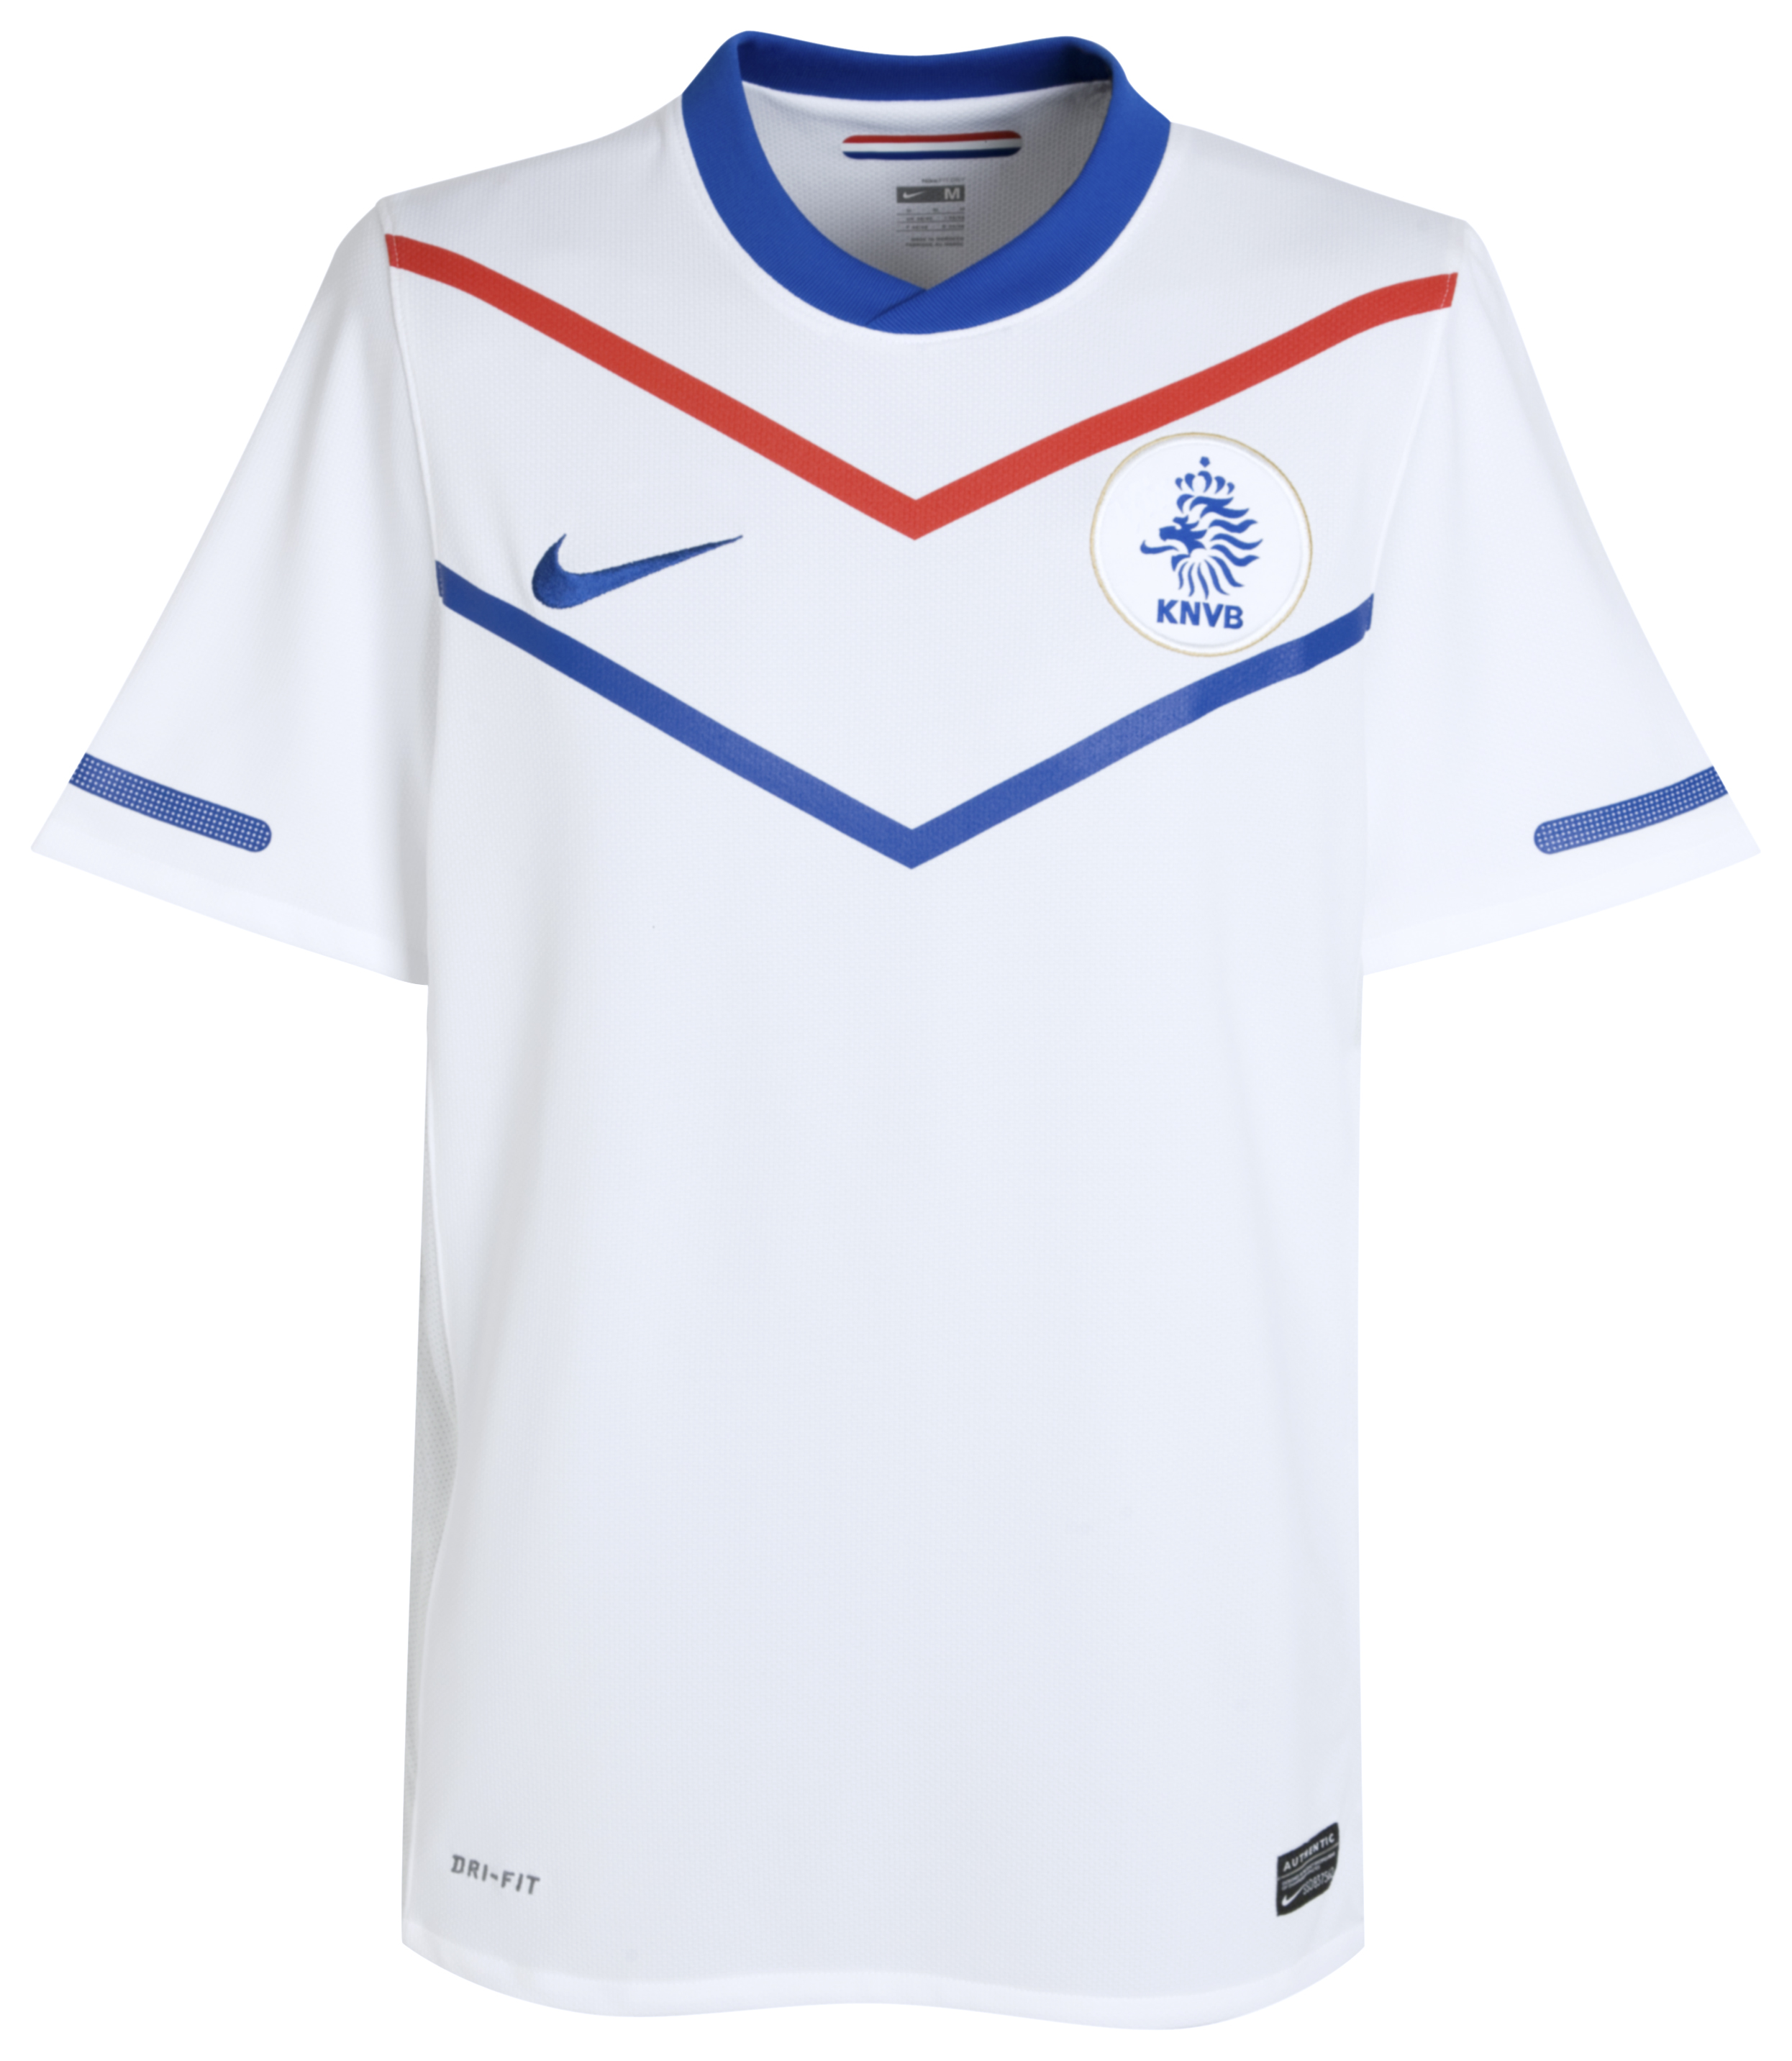 ملابس المنتخبات لكأس العالم ‎(2010)‎ Kb-65875